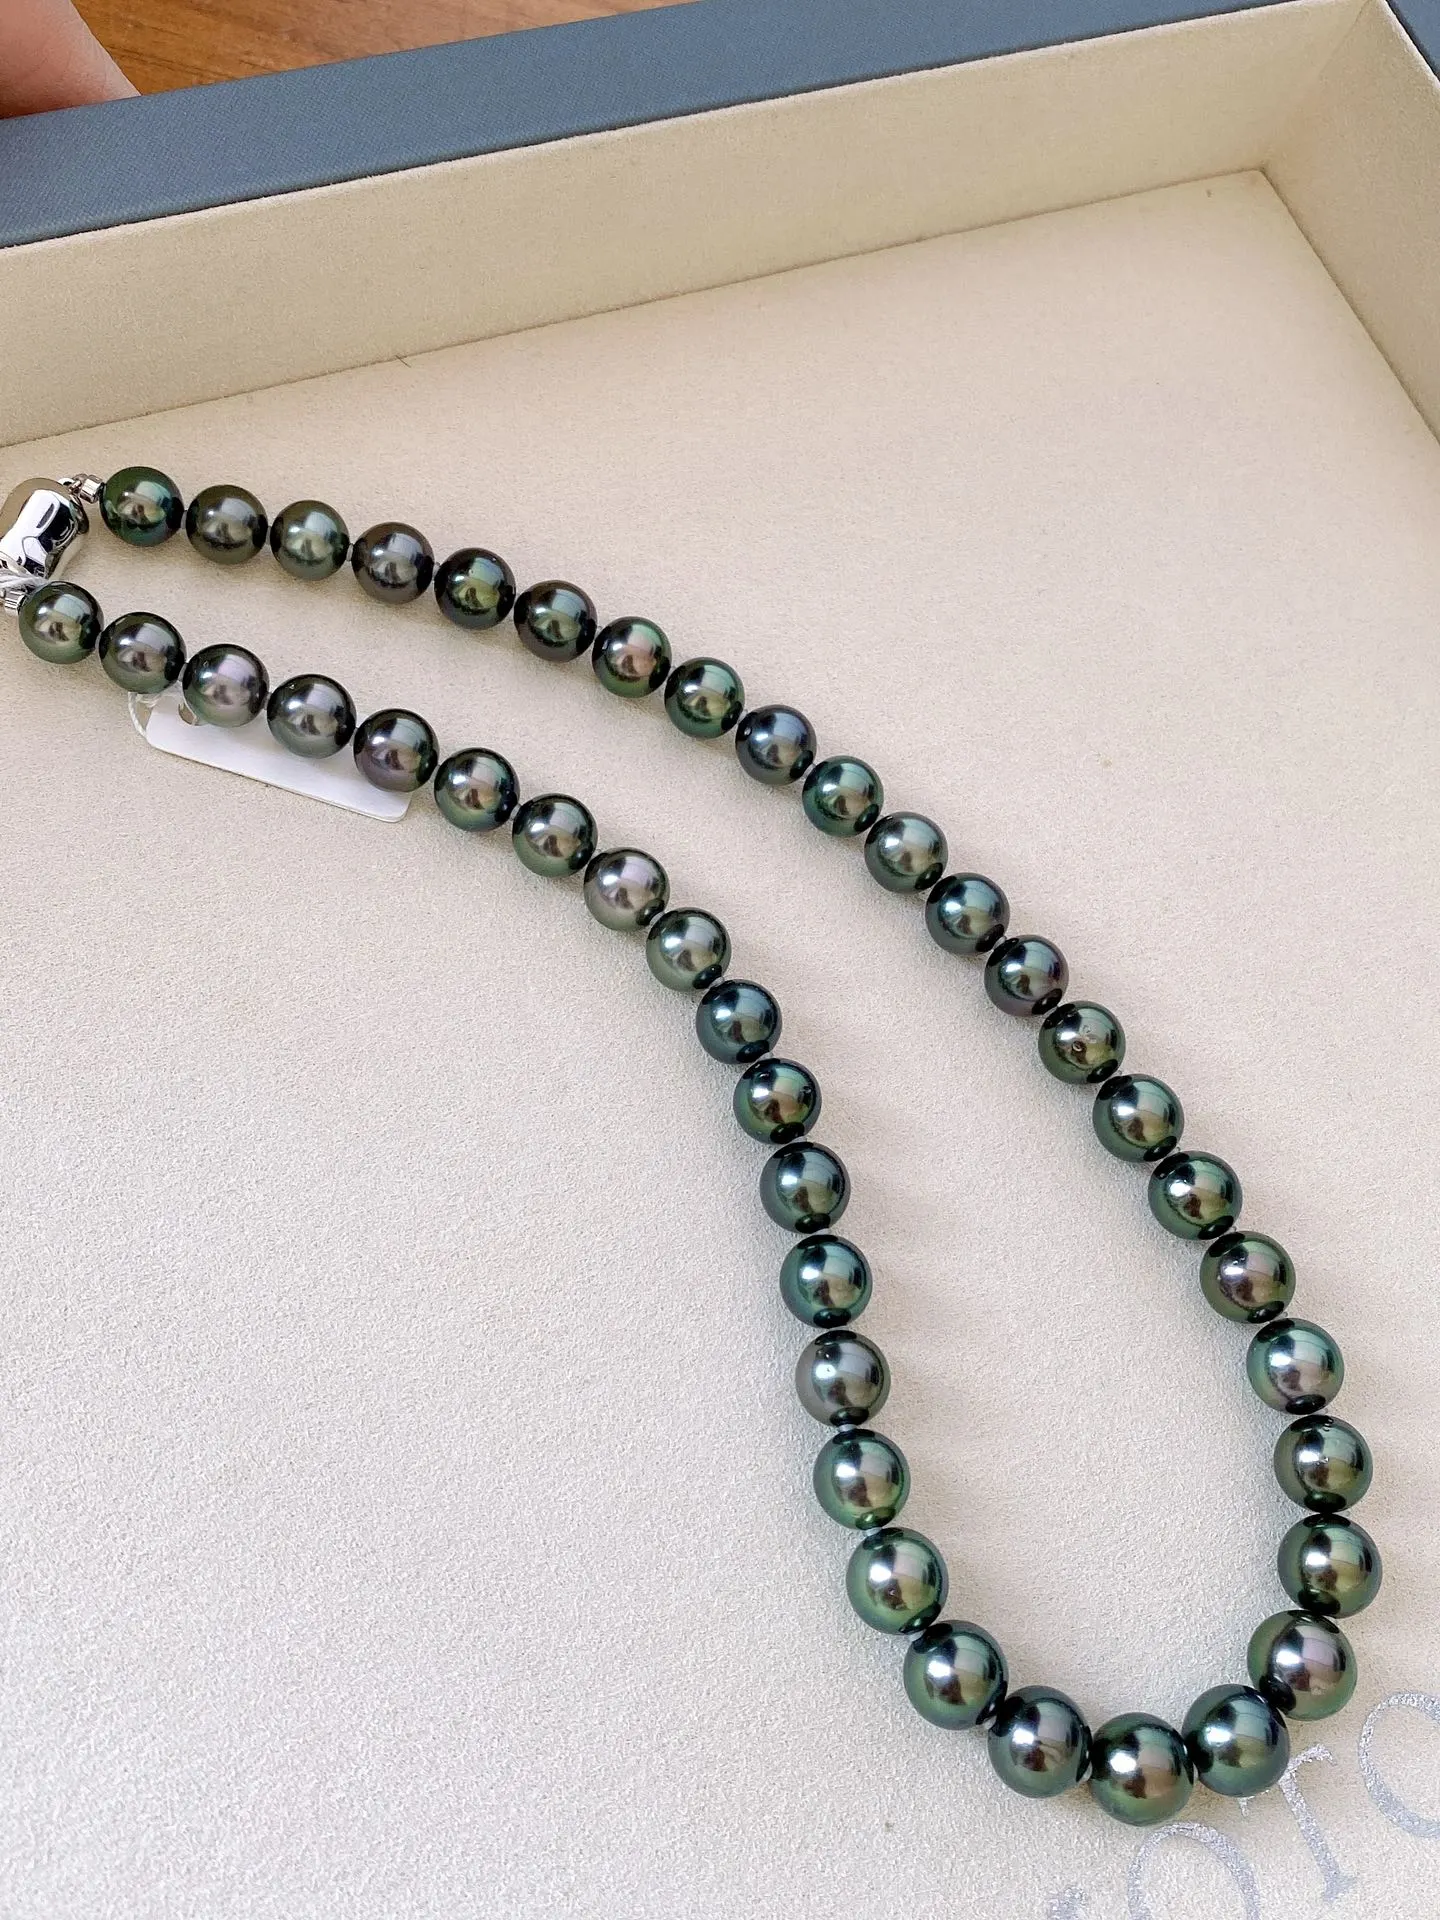 大溪地孔雀绿项链，颜色漂亮珠光美，微瑕，规格：9.1-11.1mm，黄金尺寸，上身效果赞！